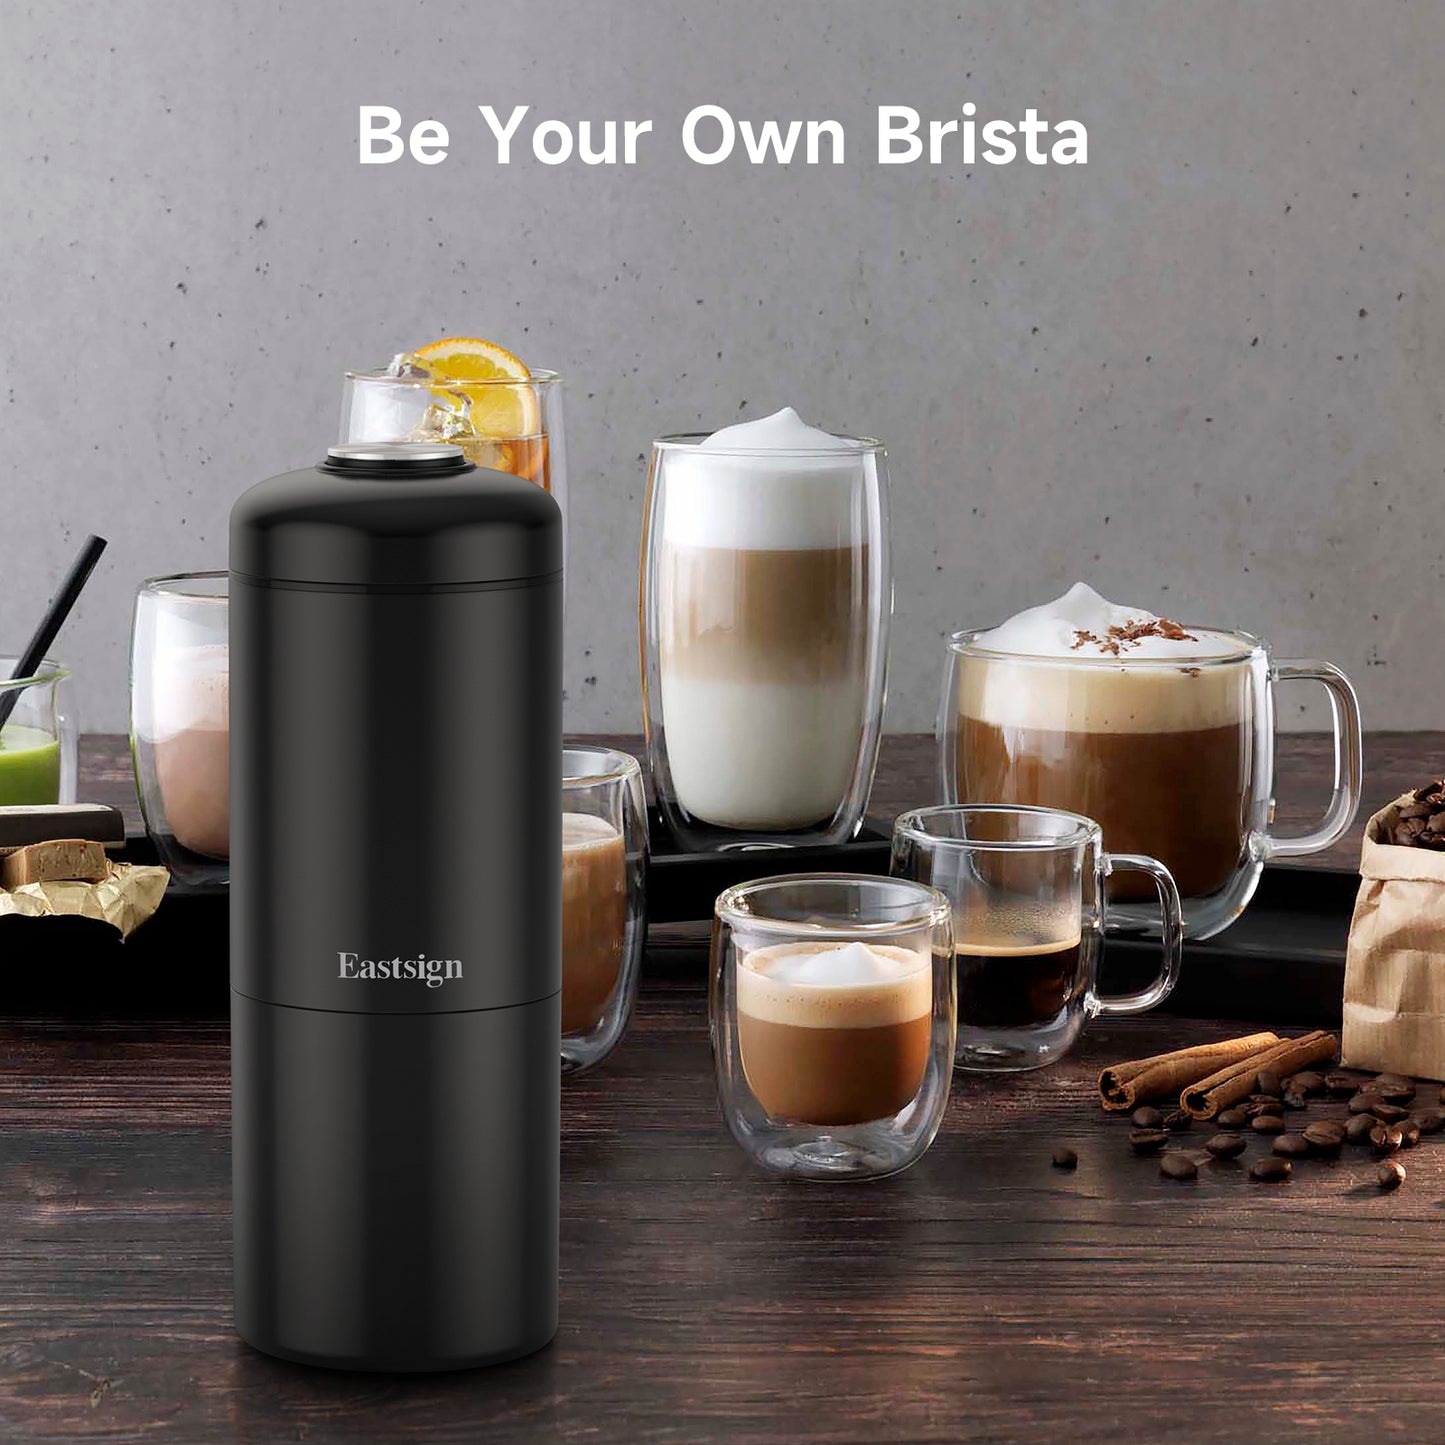 Manual Portable Coffee Maker, Espresso Coffee Machine, Nespresso Capsule Compatible